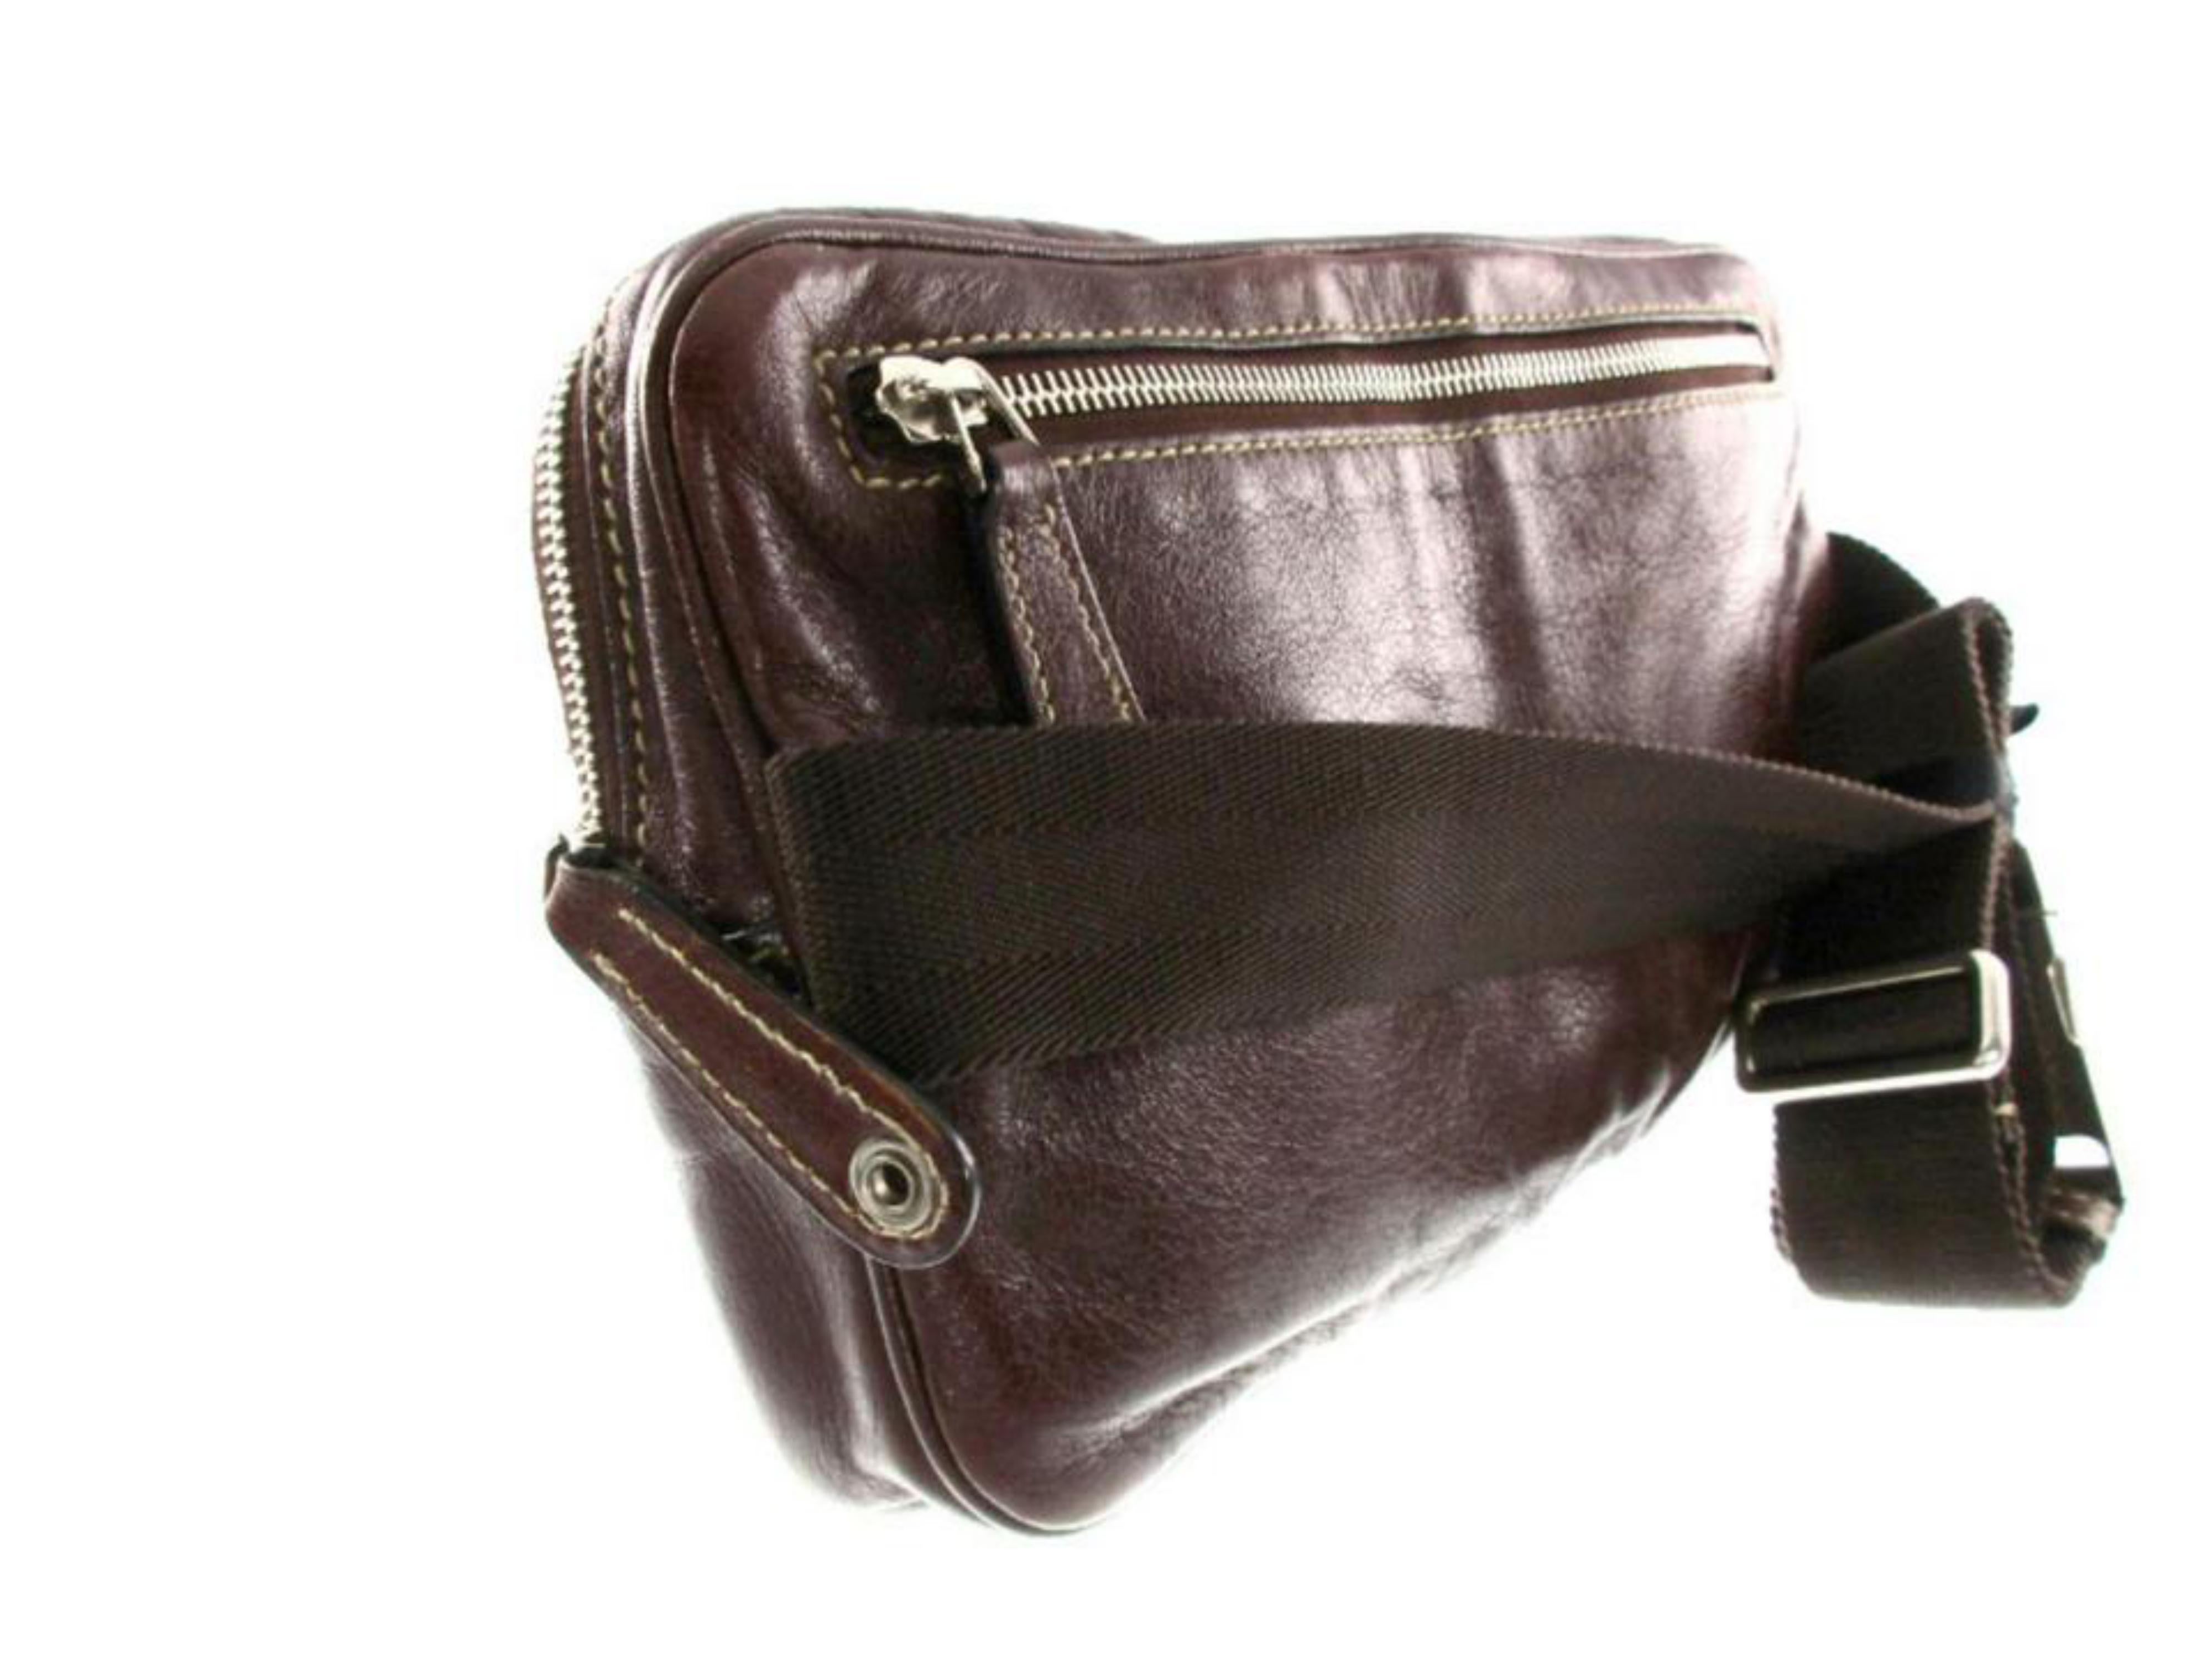 Black Gucci Waist Belt Pouch 228311 Bordeaux Leather Cross Body Bag For Sale